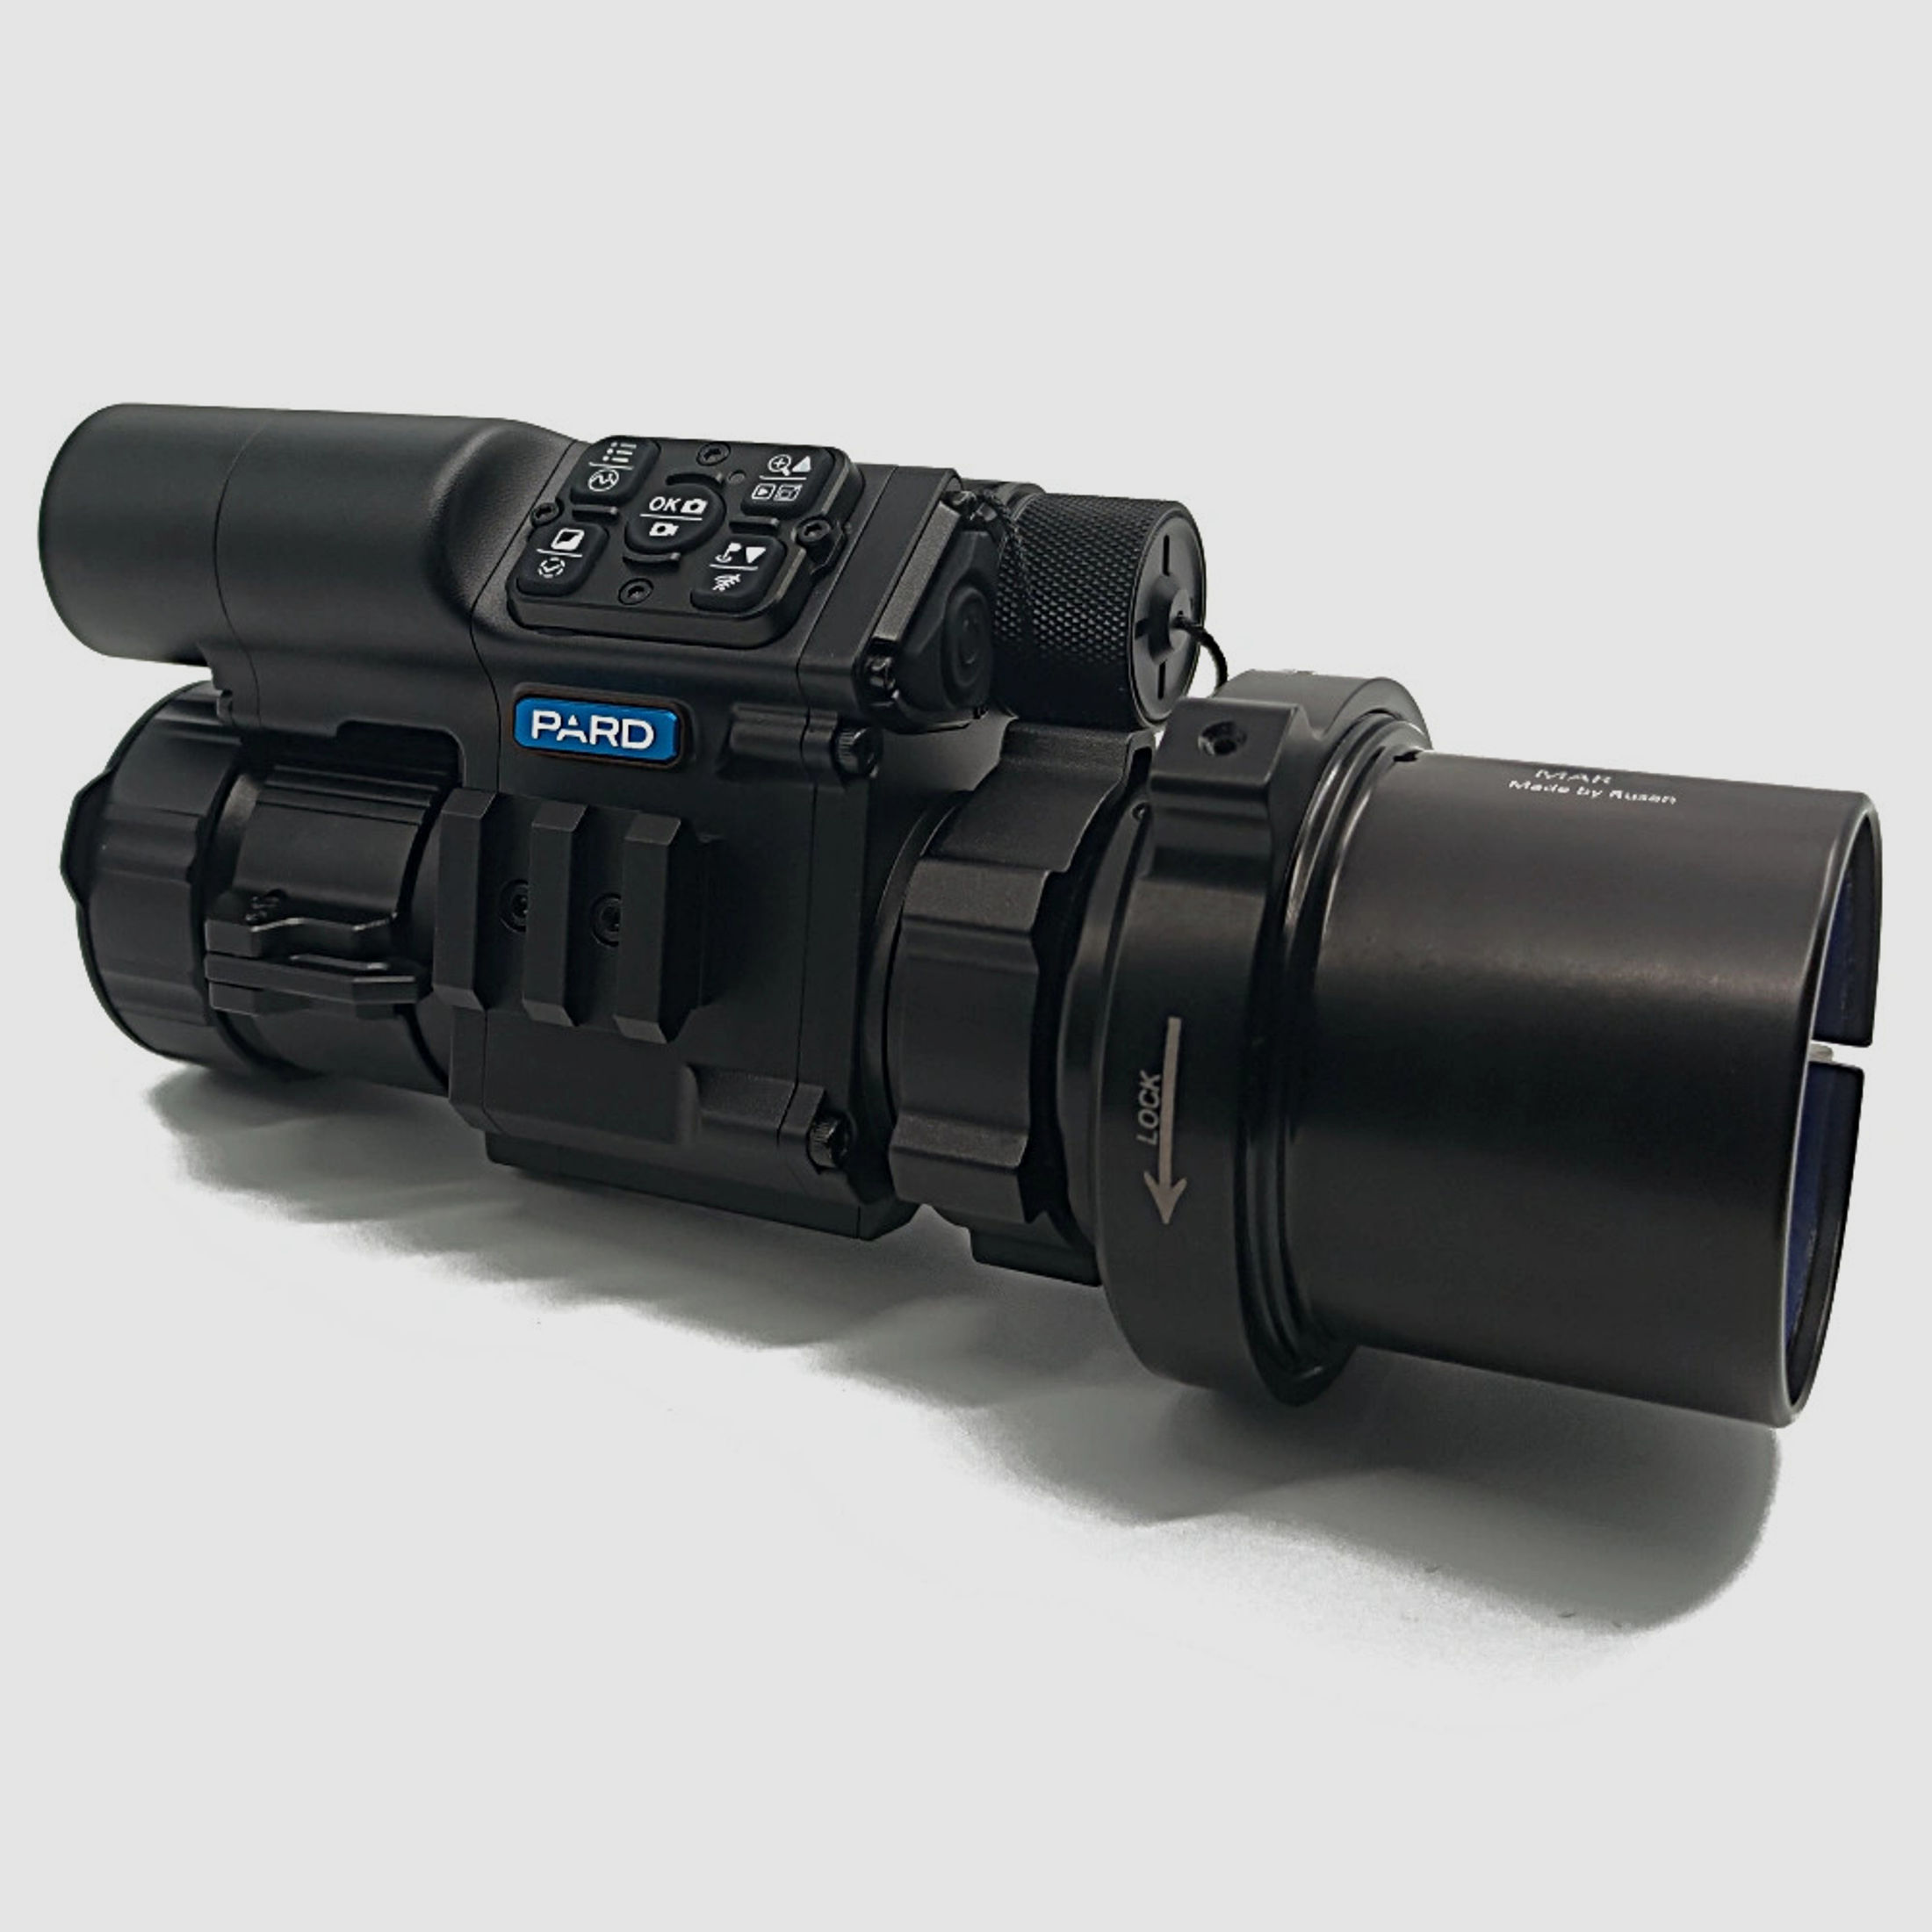 PARD FD1 Nachtsicht 3 in 1 Vorsatz, Monokular & Zielfernrohr - 940 nm mit LRF 63 mm RUSAN MAR + RUSAN MCR